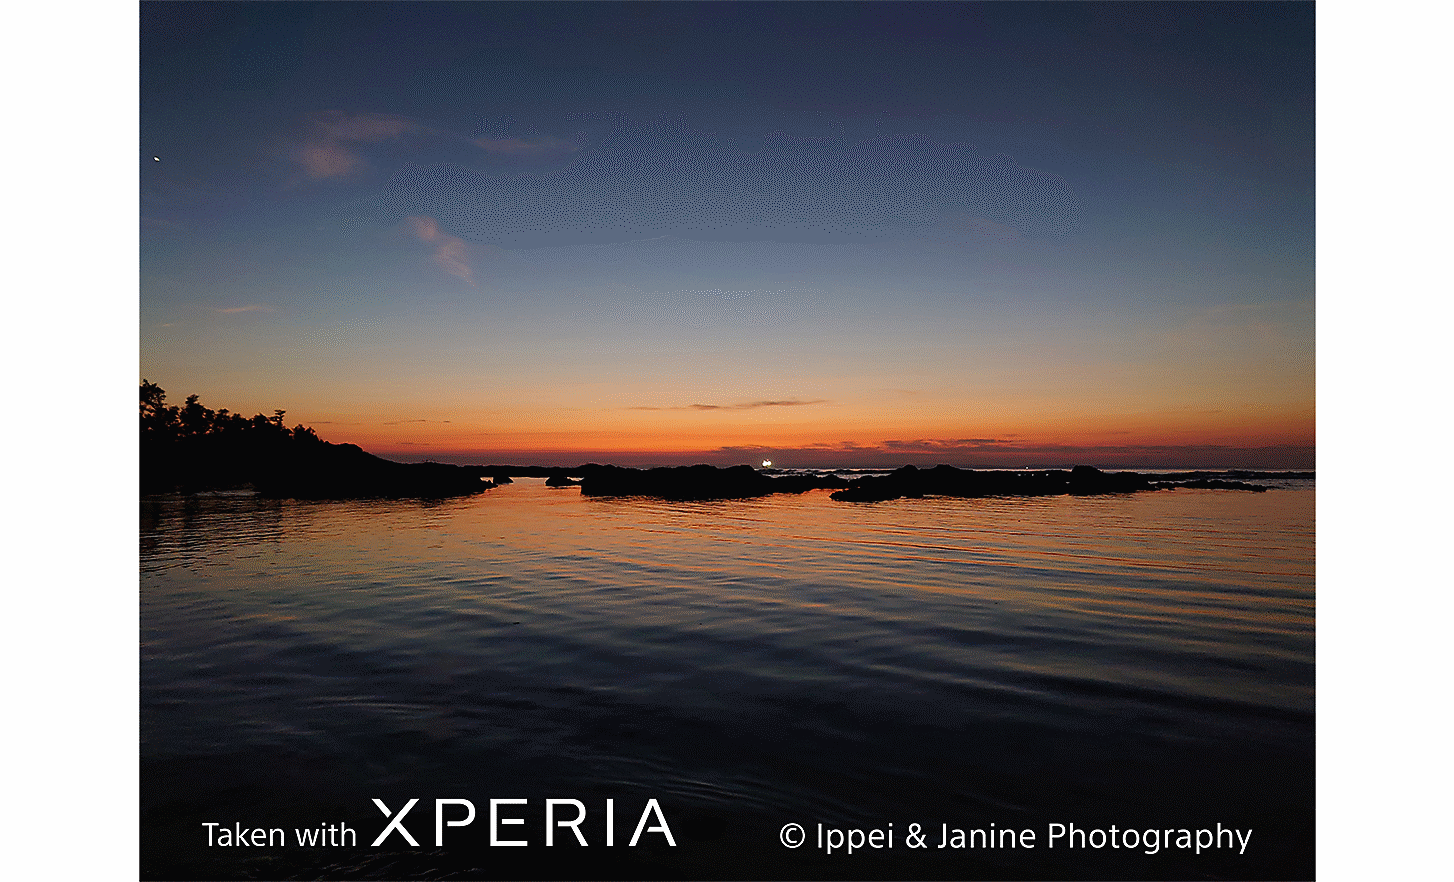 Cảnh hoàng hôn trên vùng nước rộng lớn. Trên ảnh có dòng chữ "Taken with Xperia ©Ippei & Janine Photography” (Chụp bằng Xperia ©Ippei & Janine Photography).